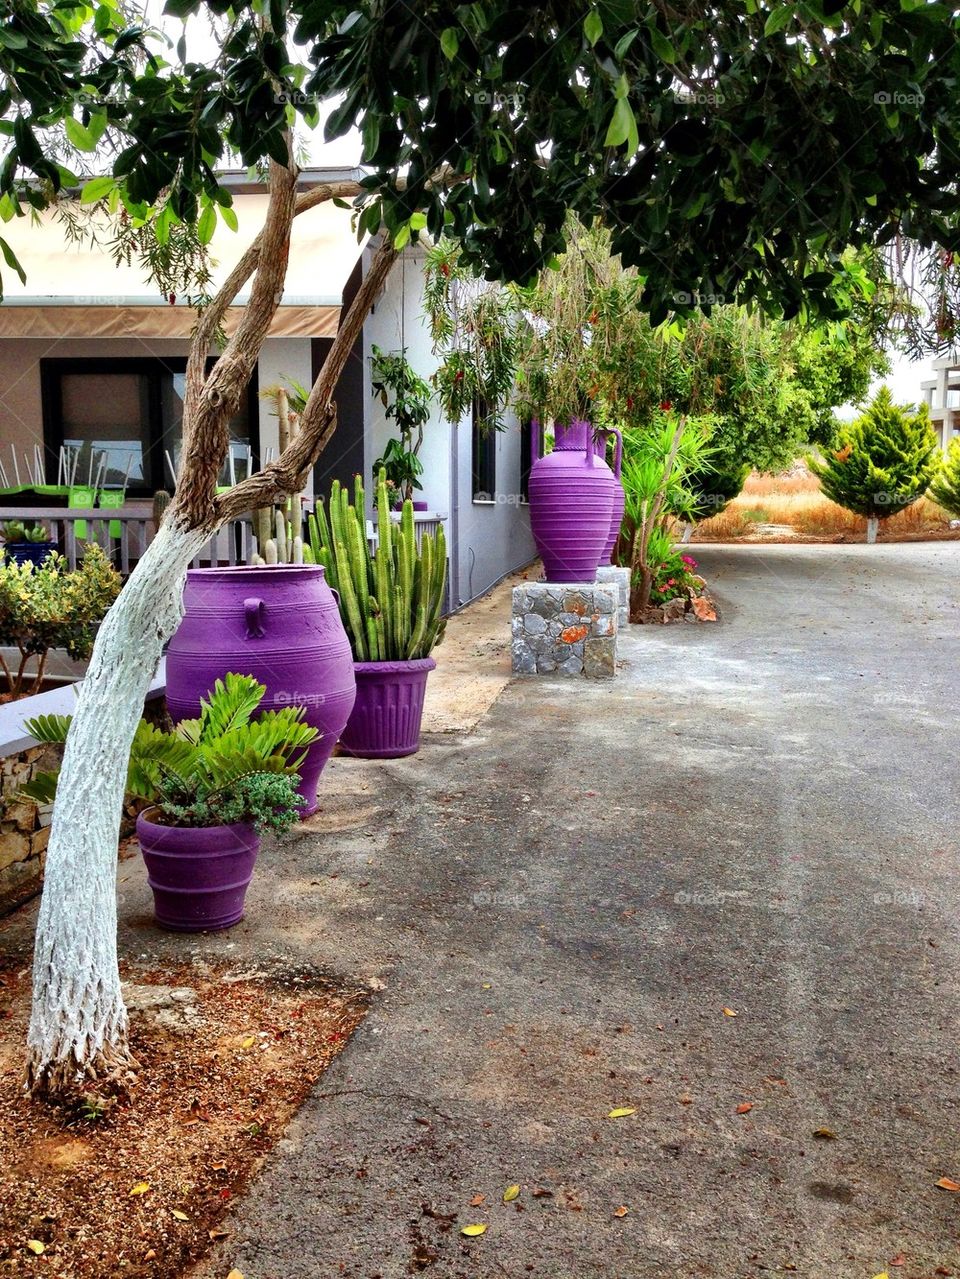 The purple pots